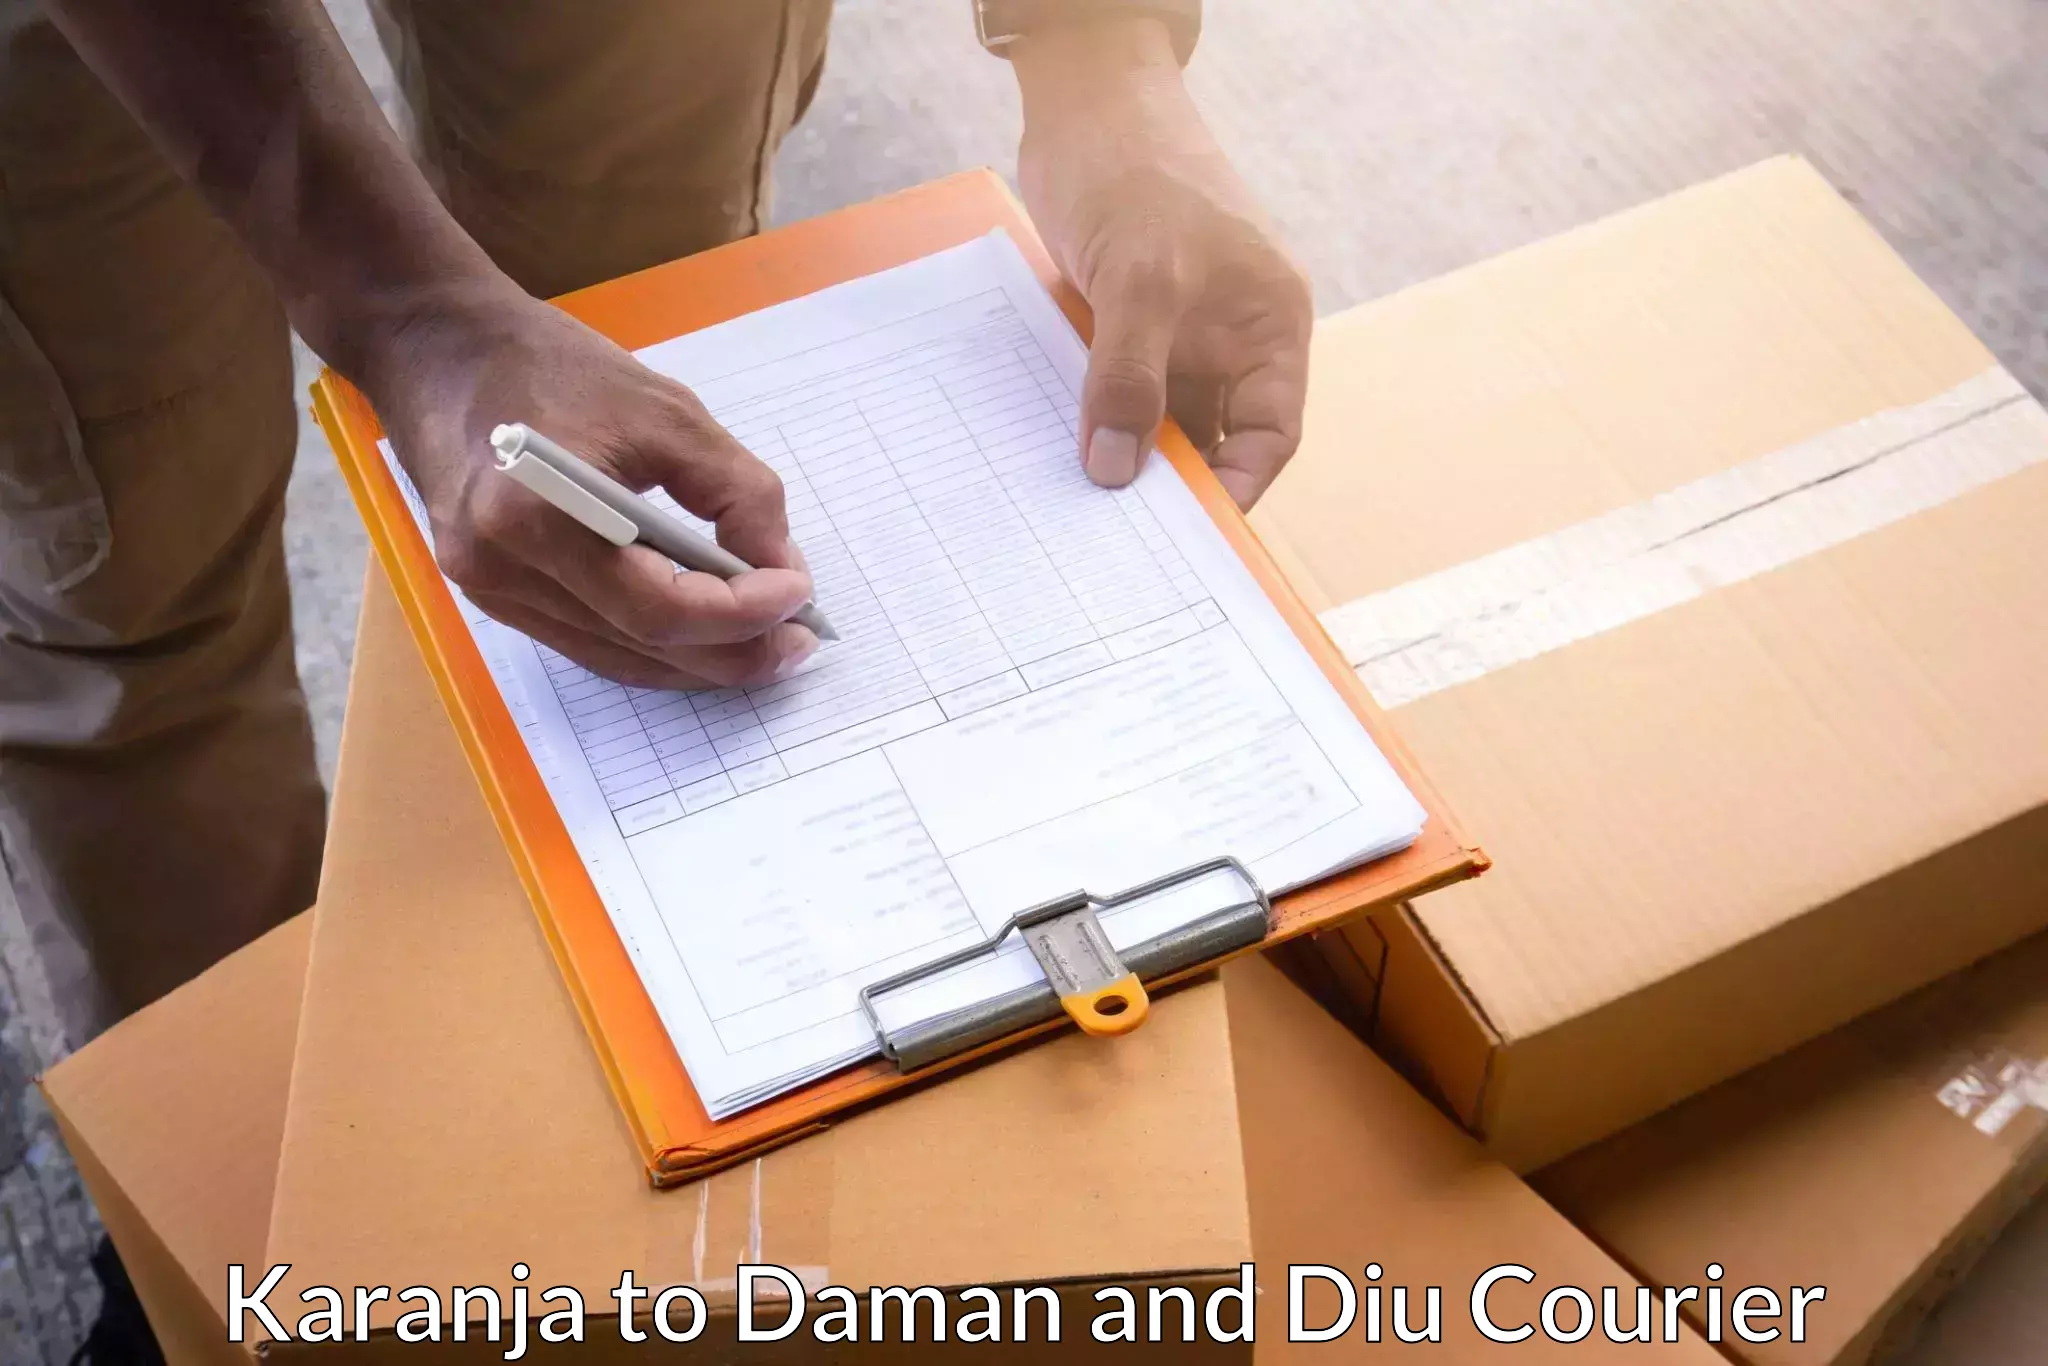 High-performance logistics Karanja to Daman